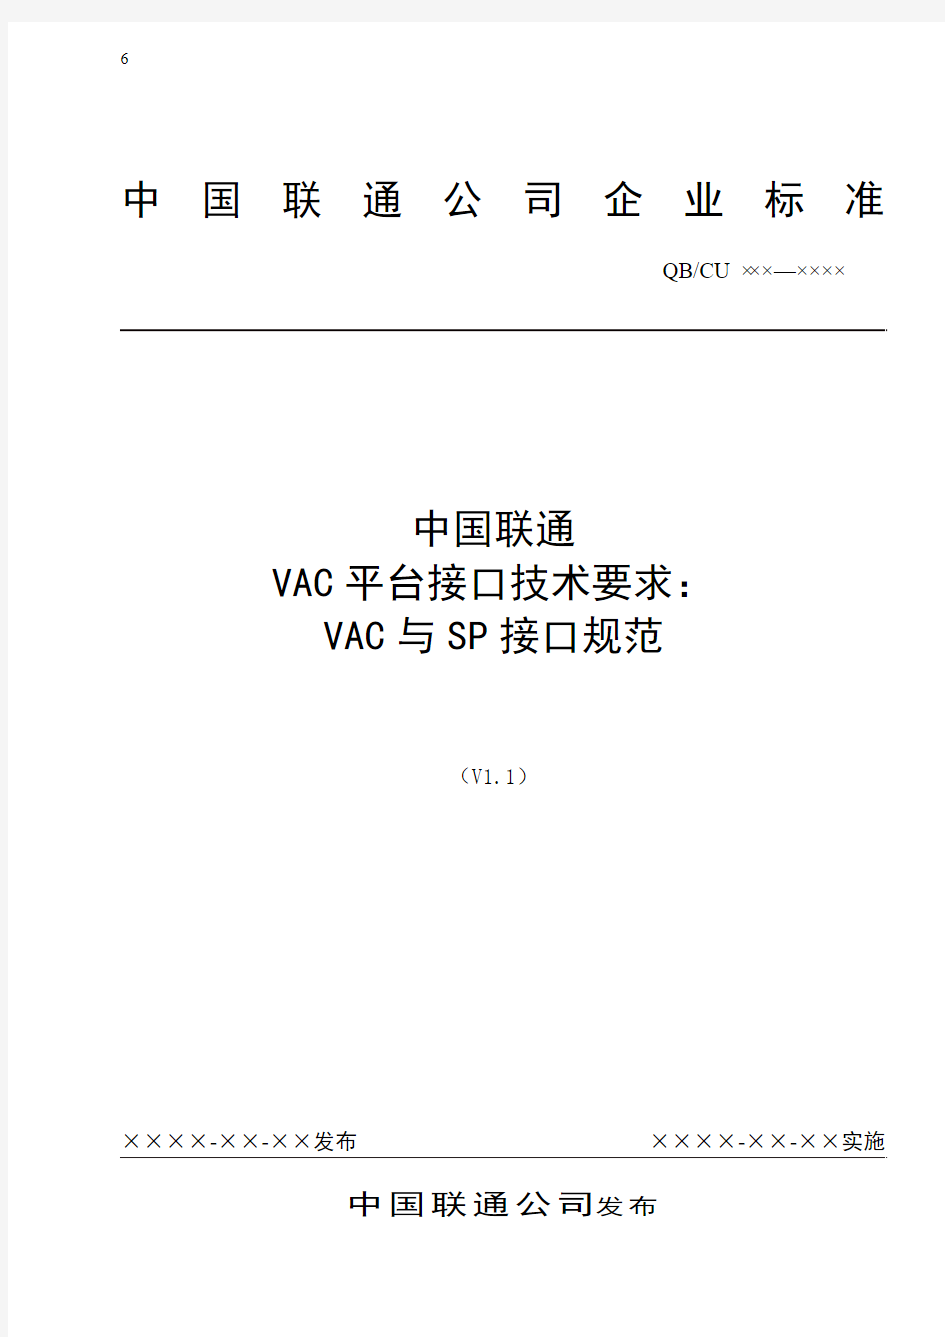 中国联通增值业务鉴权中心接口规范-VAC与SP接口规范-1212